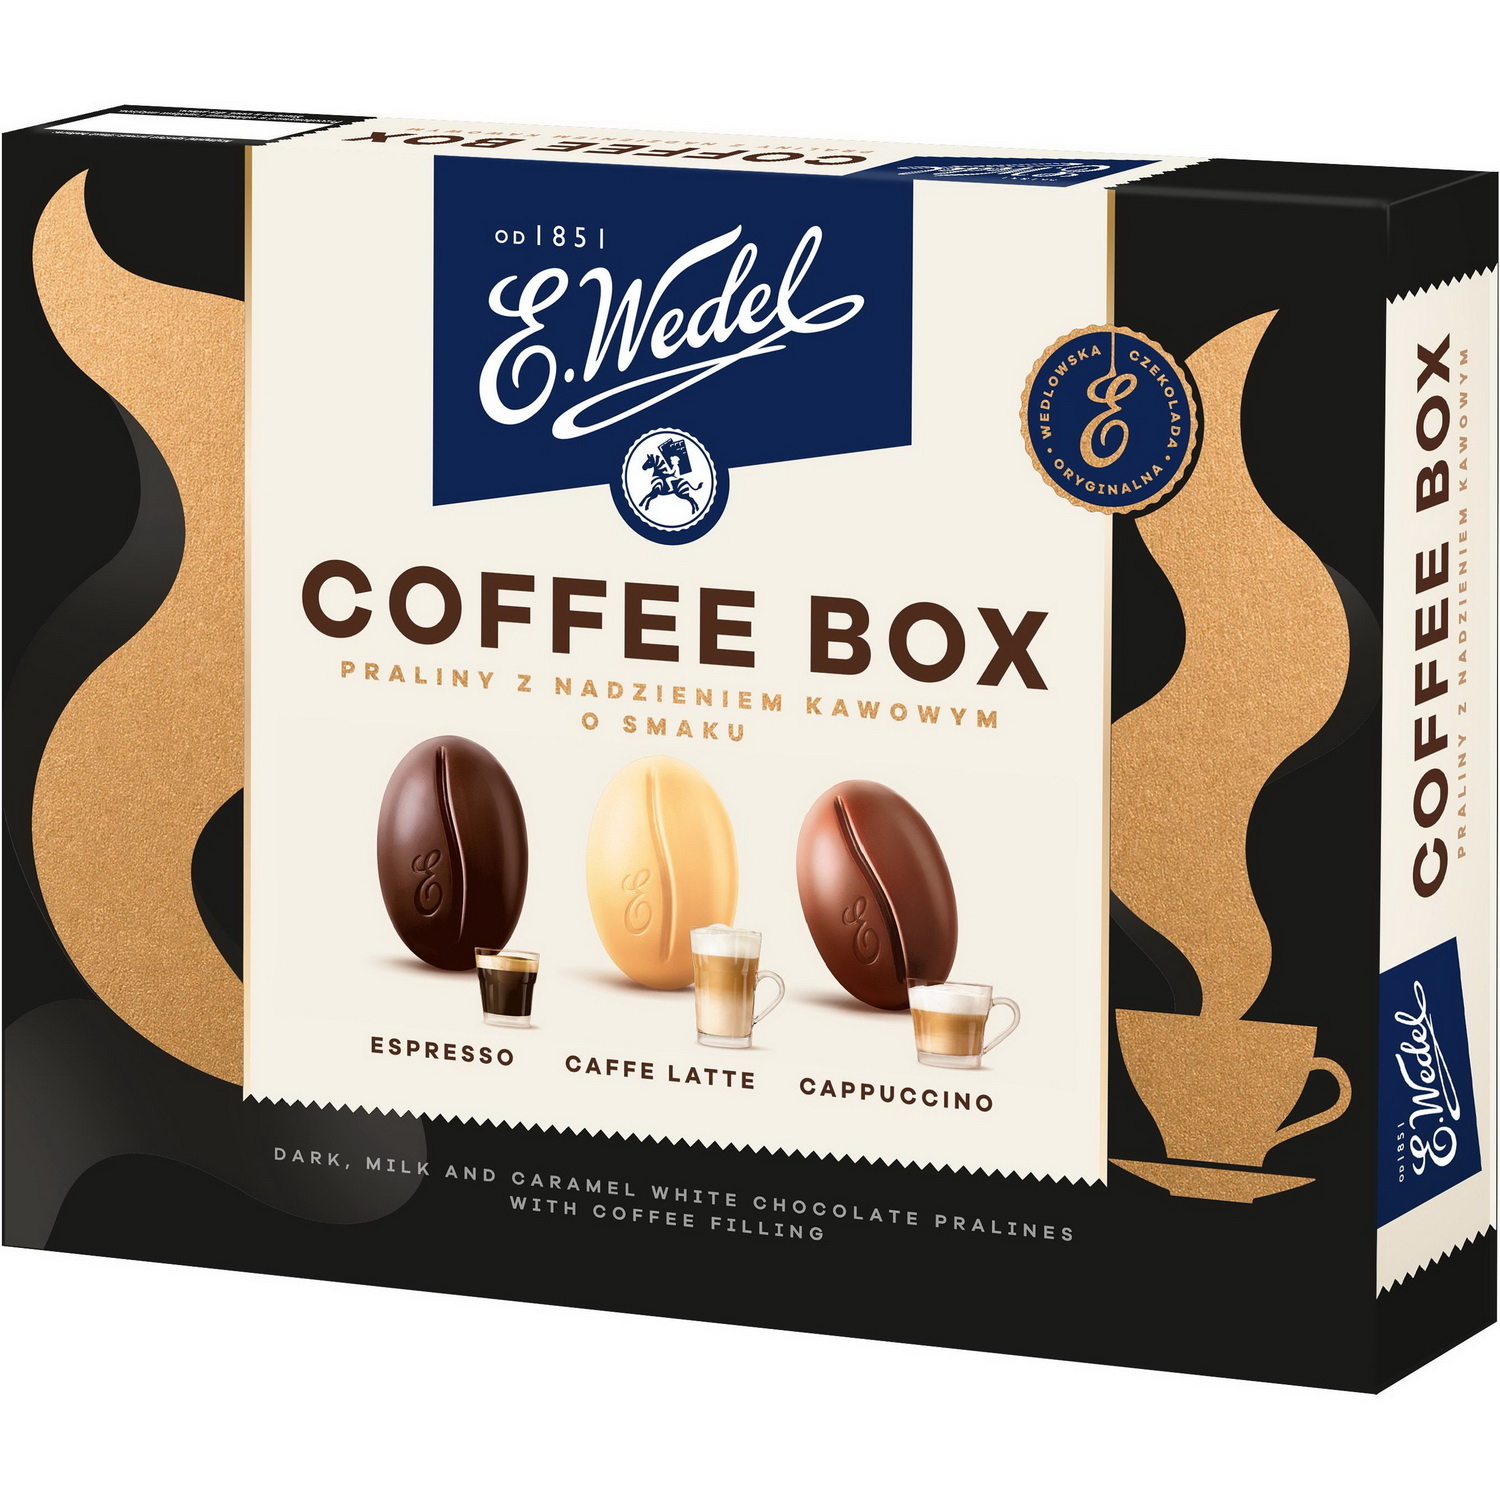 Цукерки E.Wedel Coffee Box праліне з кавовим смаком, 100 г - фото 1